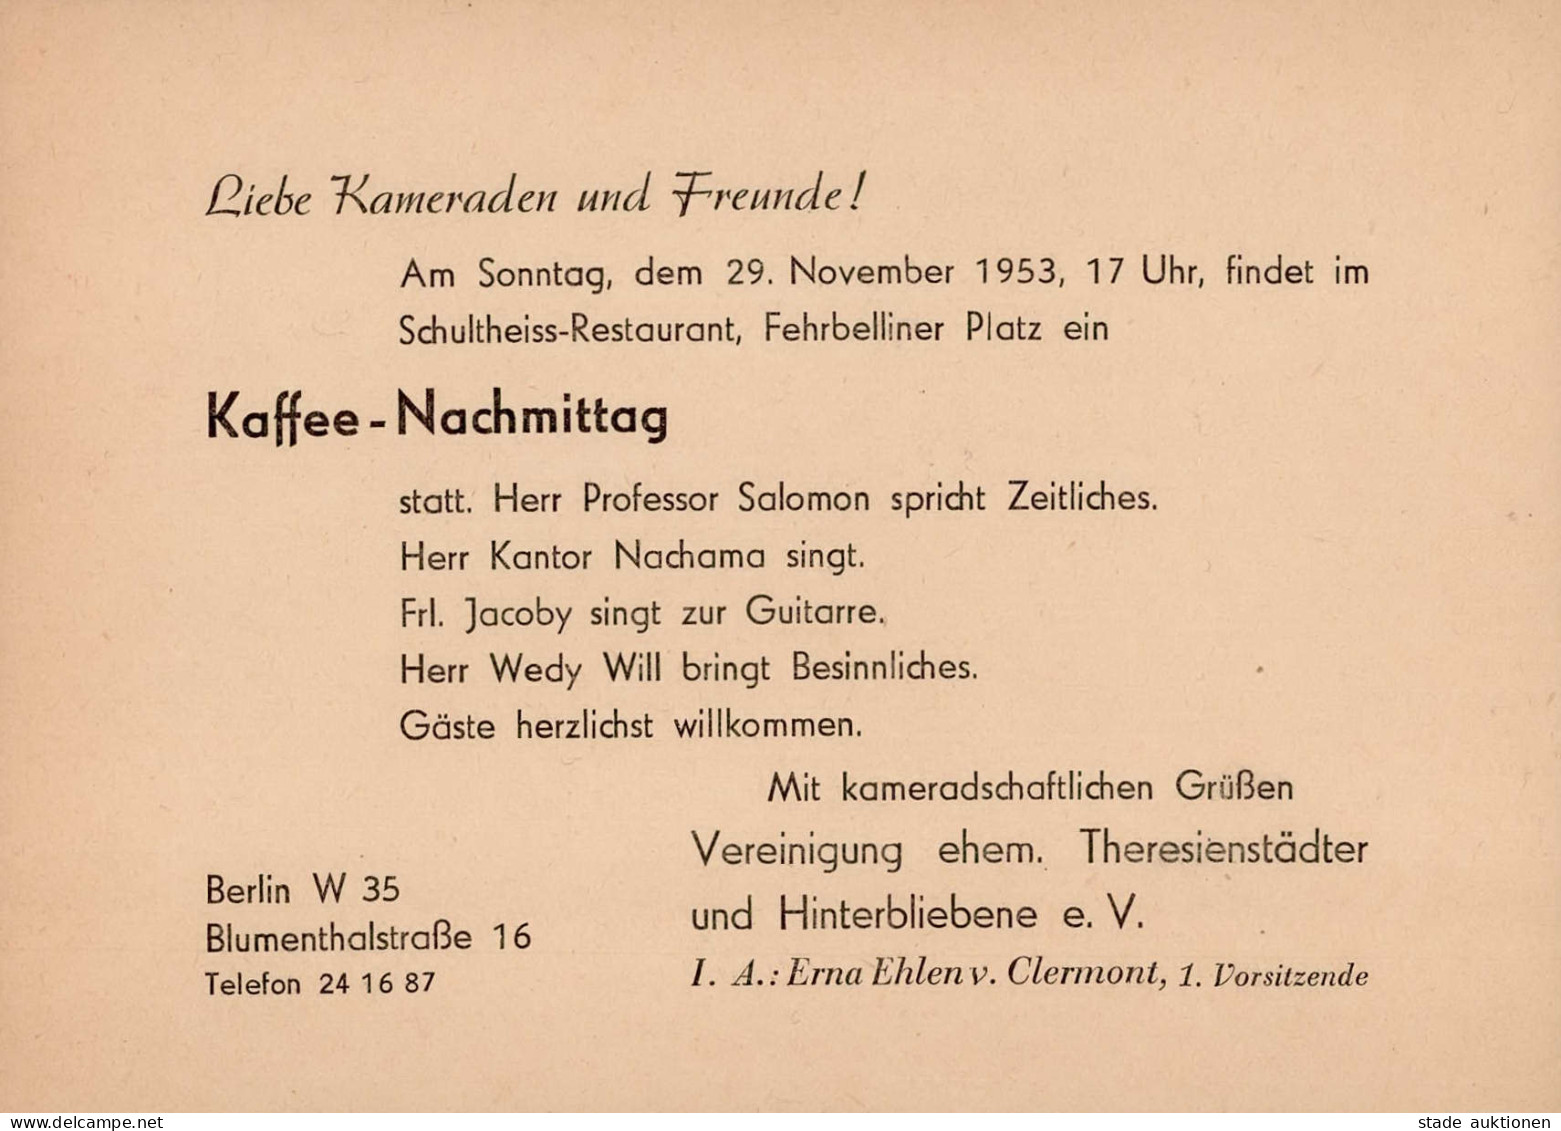 Judaika Berlin Einladungskarte 1953 Von Der Vereinigung Ehem. Theresienstädter Und Hinterbliebene E.V. Judaisme - Judaika